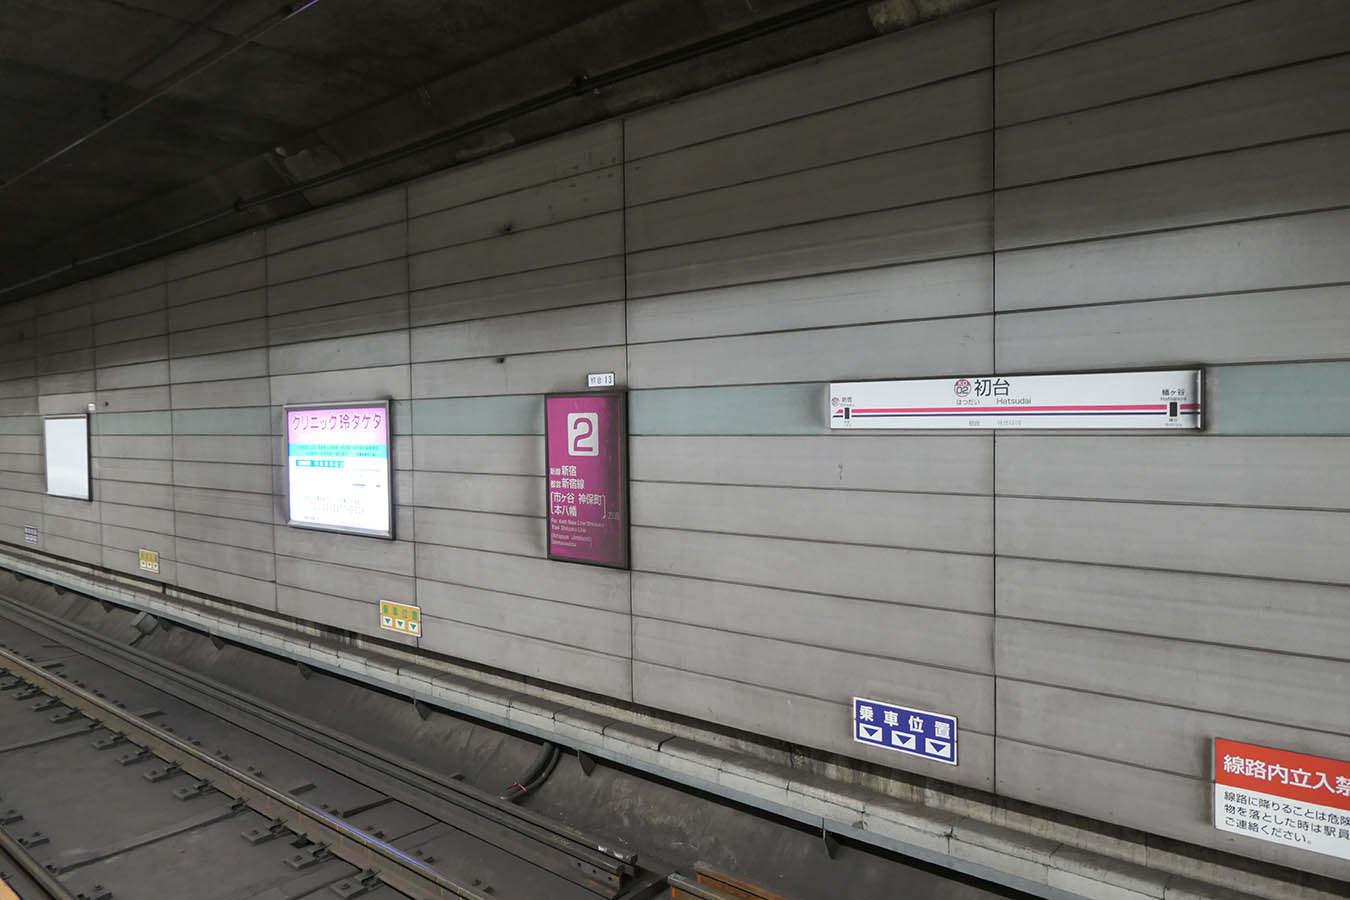 Ko02 京王新線 初台駅 ちかてつと駅の壁